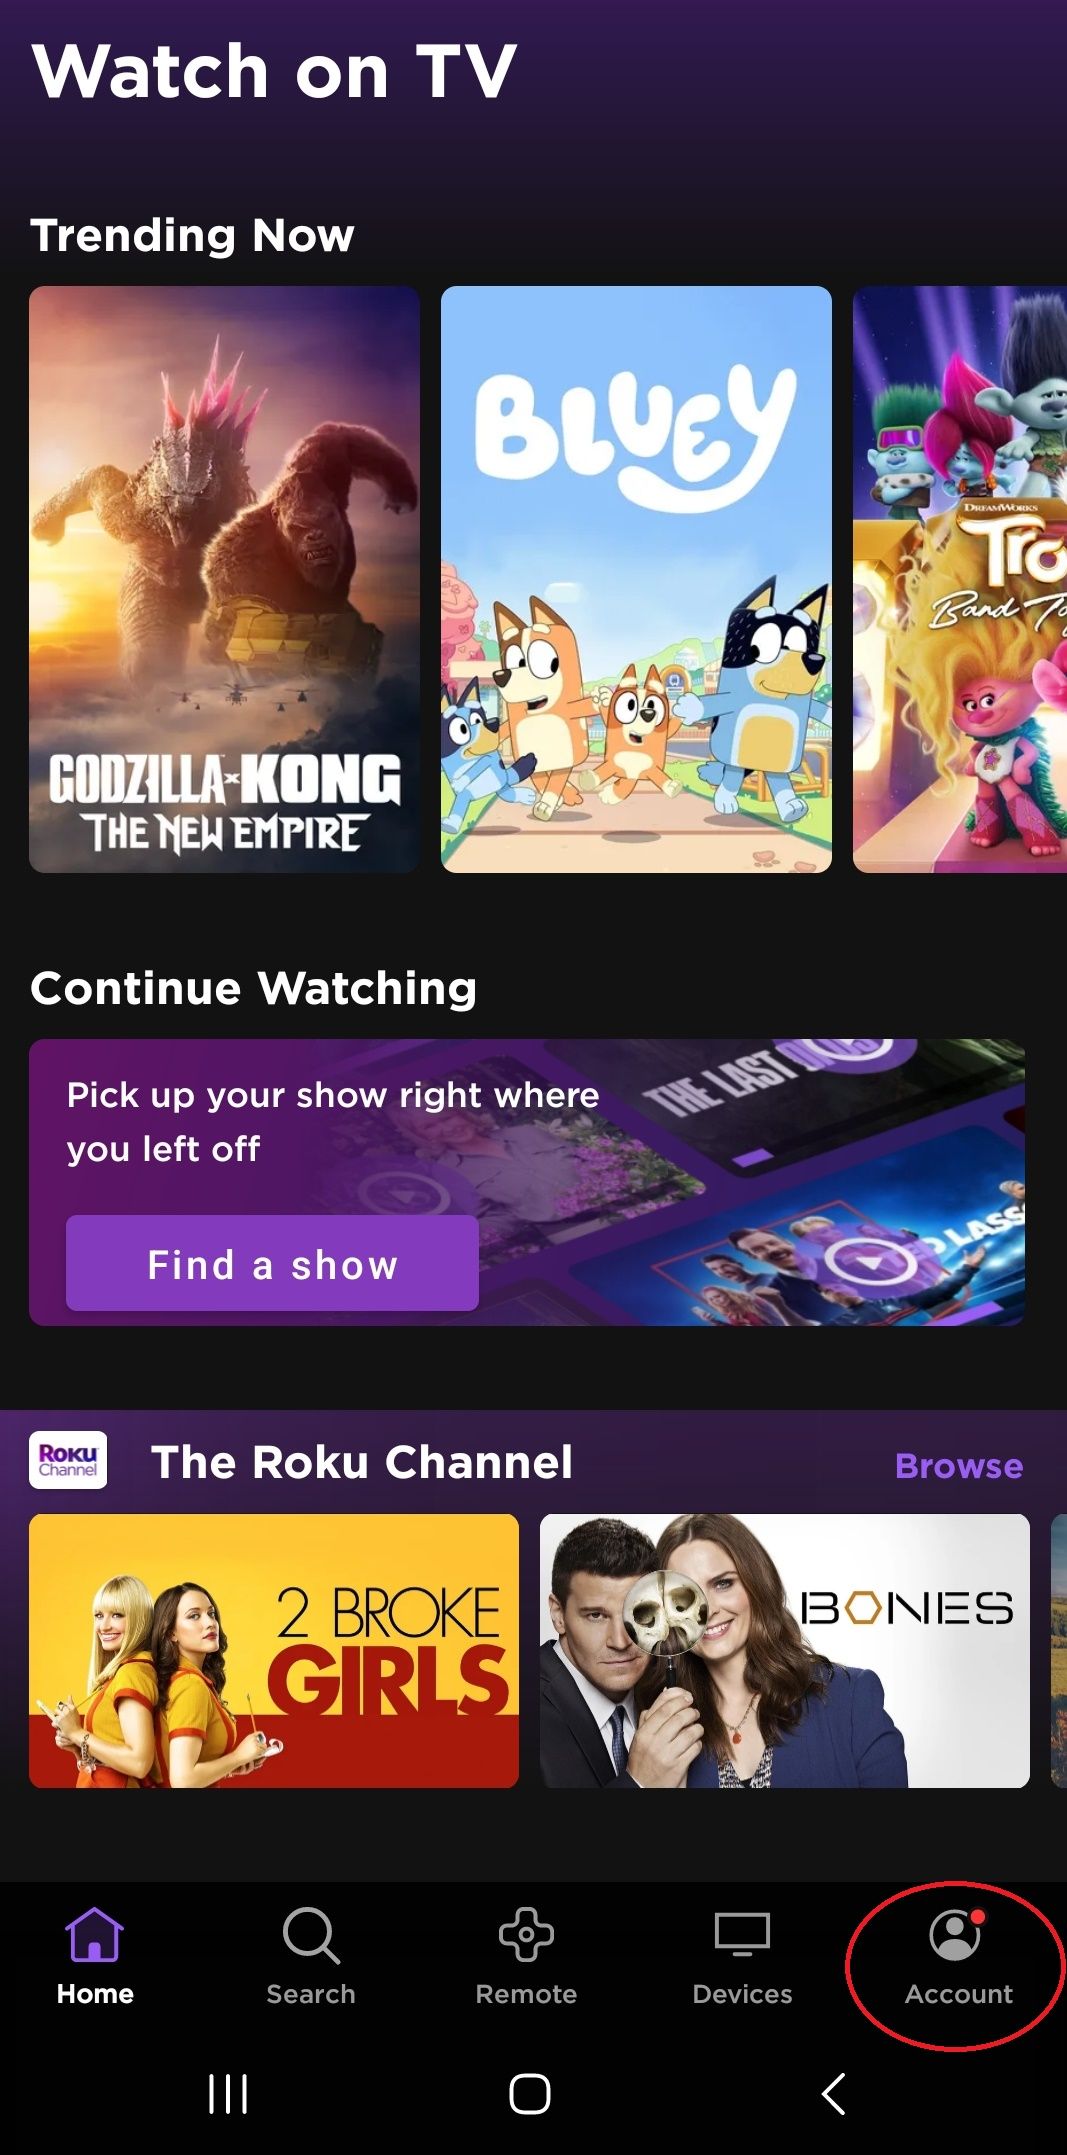 Captura de tela do aplicativo Roku mostrando o botão Conta